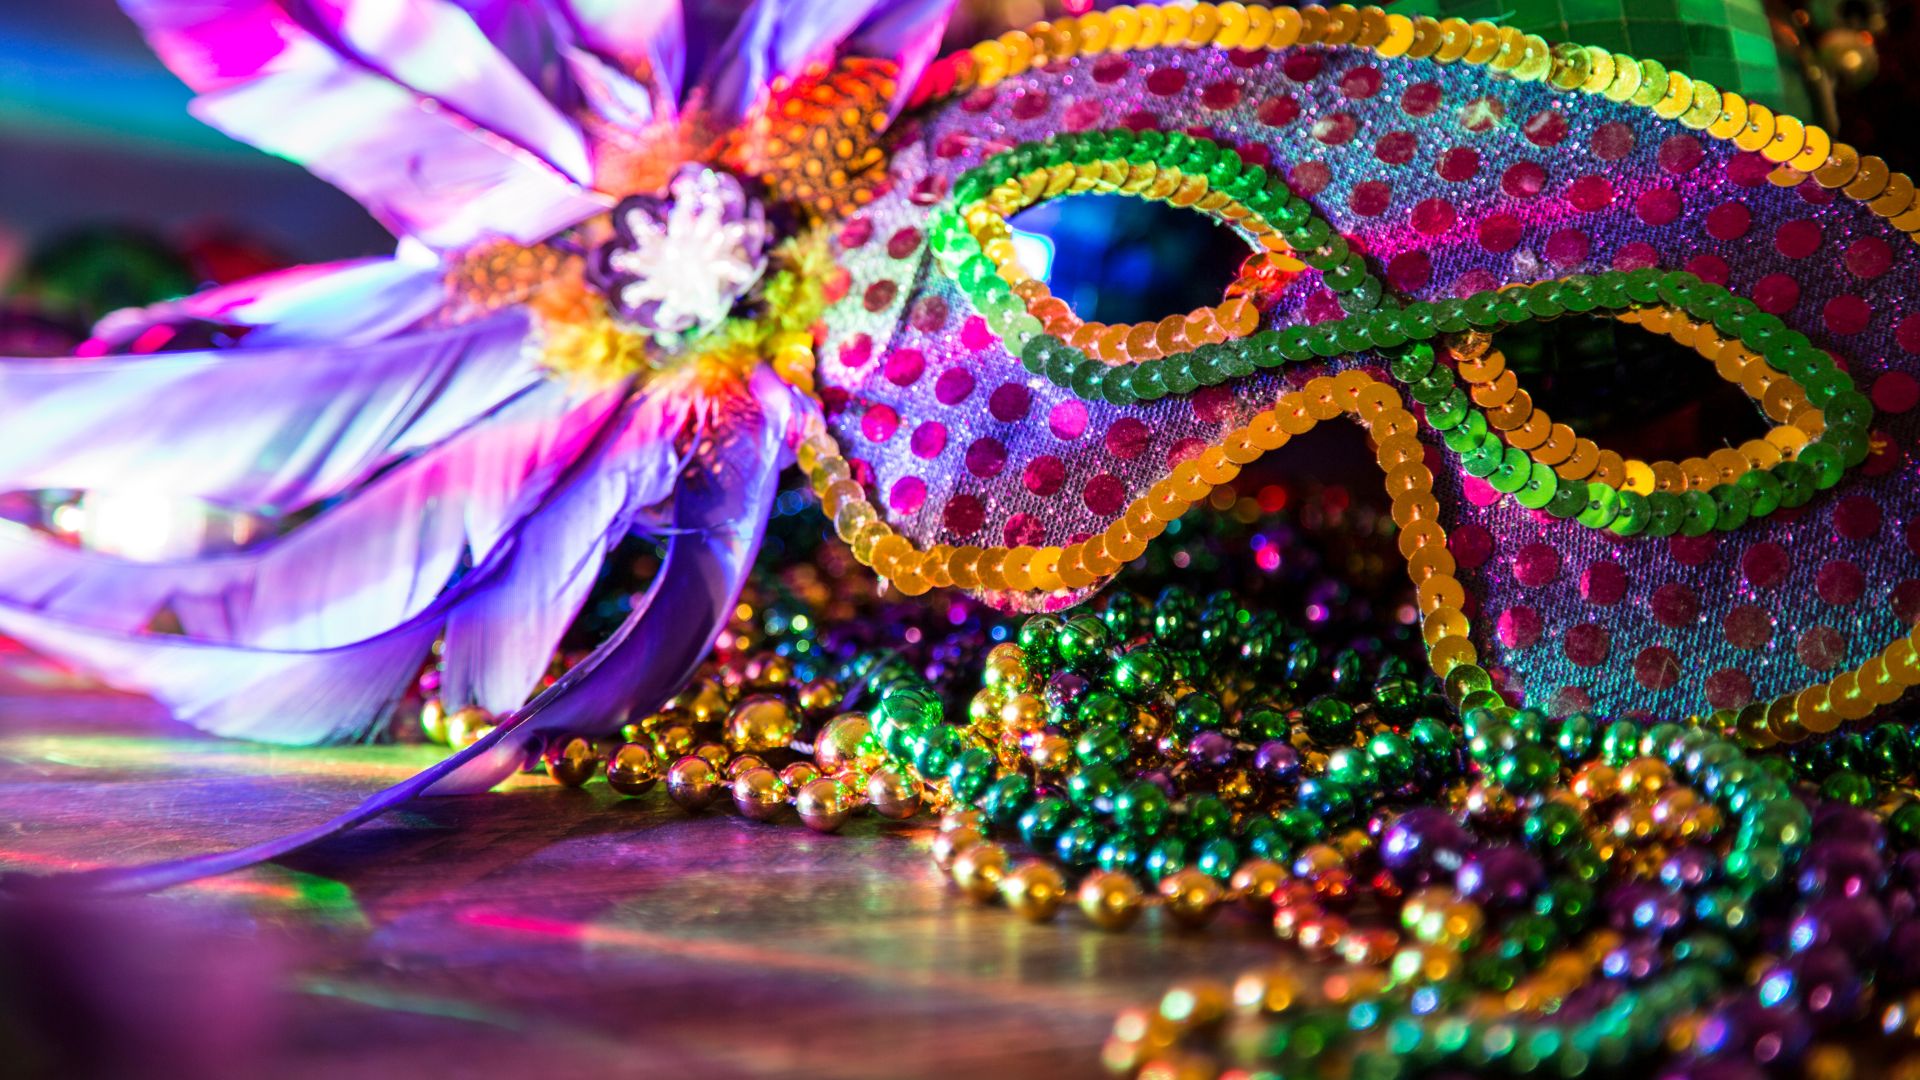 Consejos de seguridad para el Carnaval de Río de Janeiro